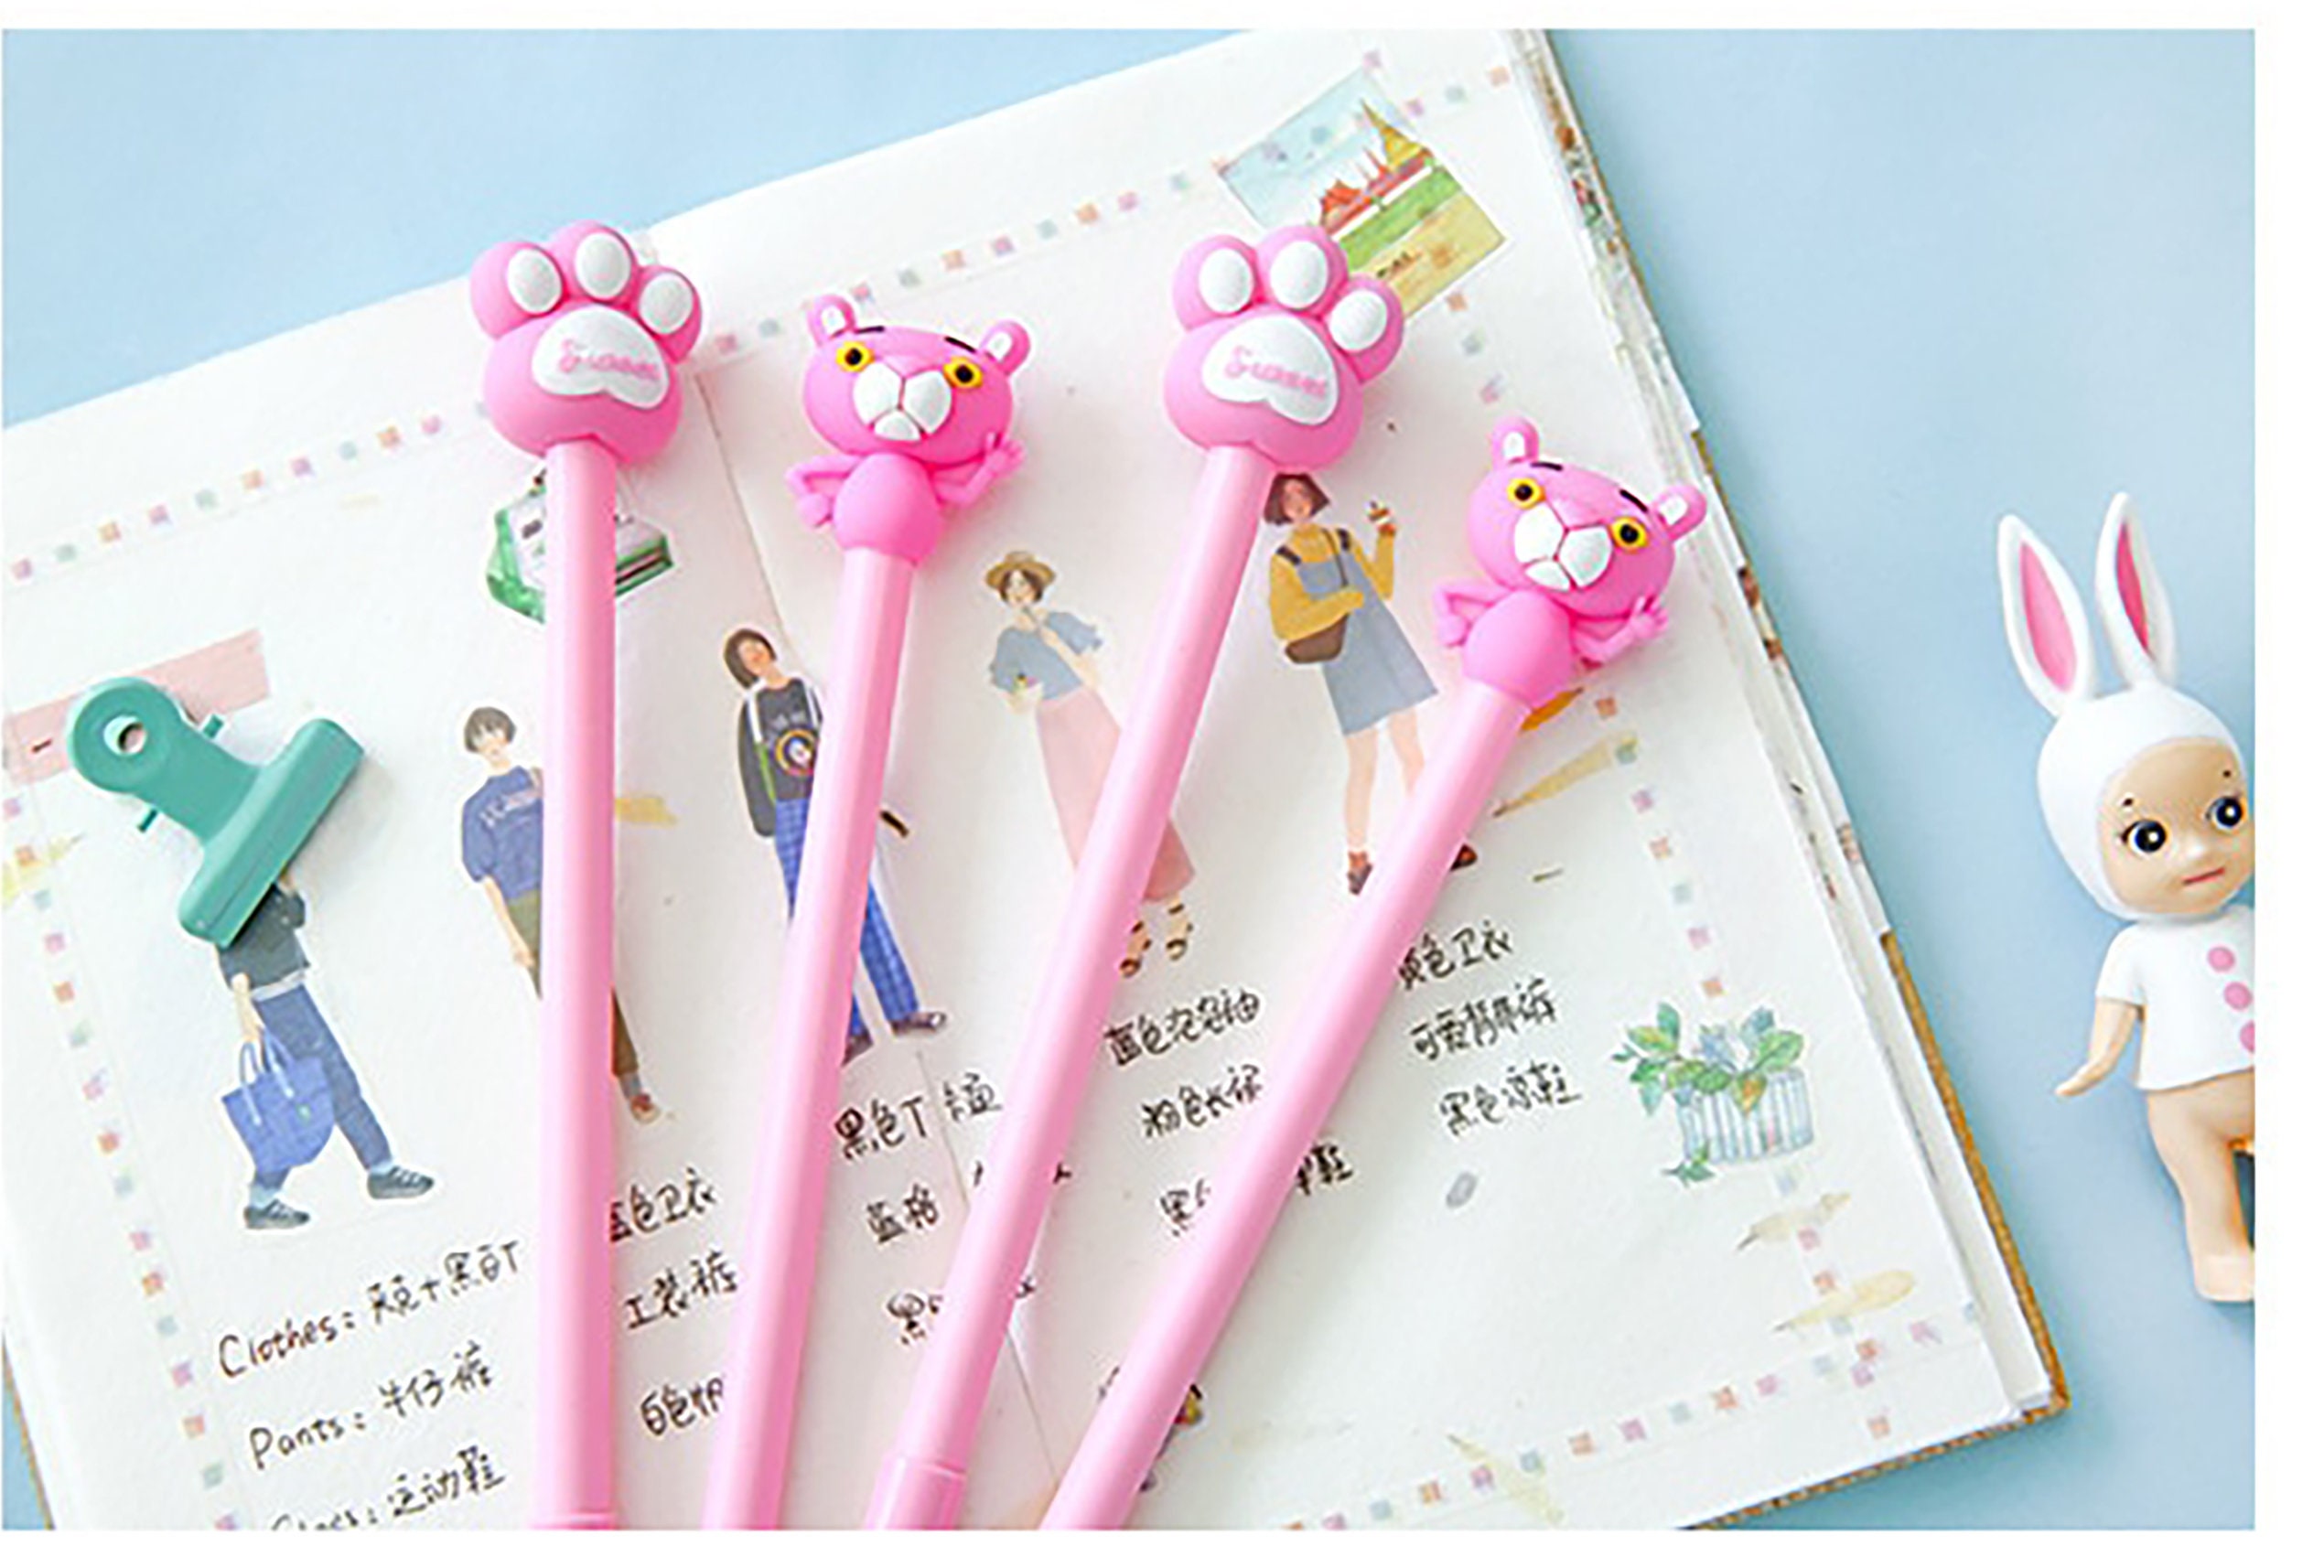 Personalized Glitter Pens, Butterfly Pens, Gel Pens,pens for Kids